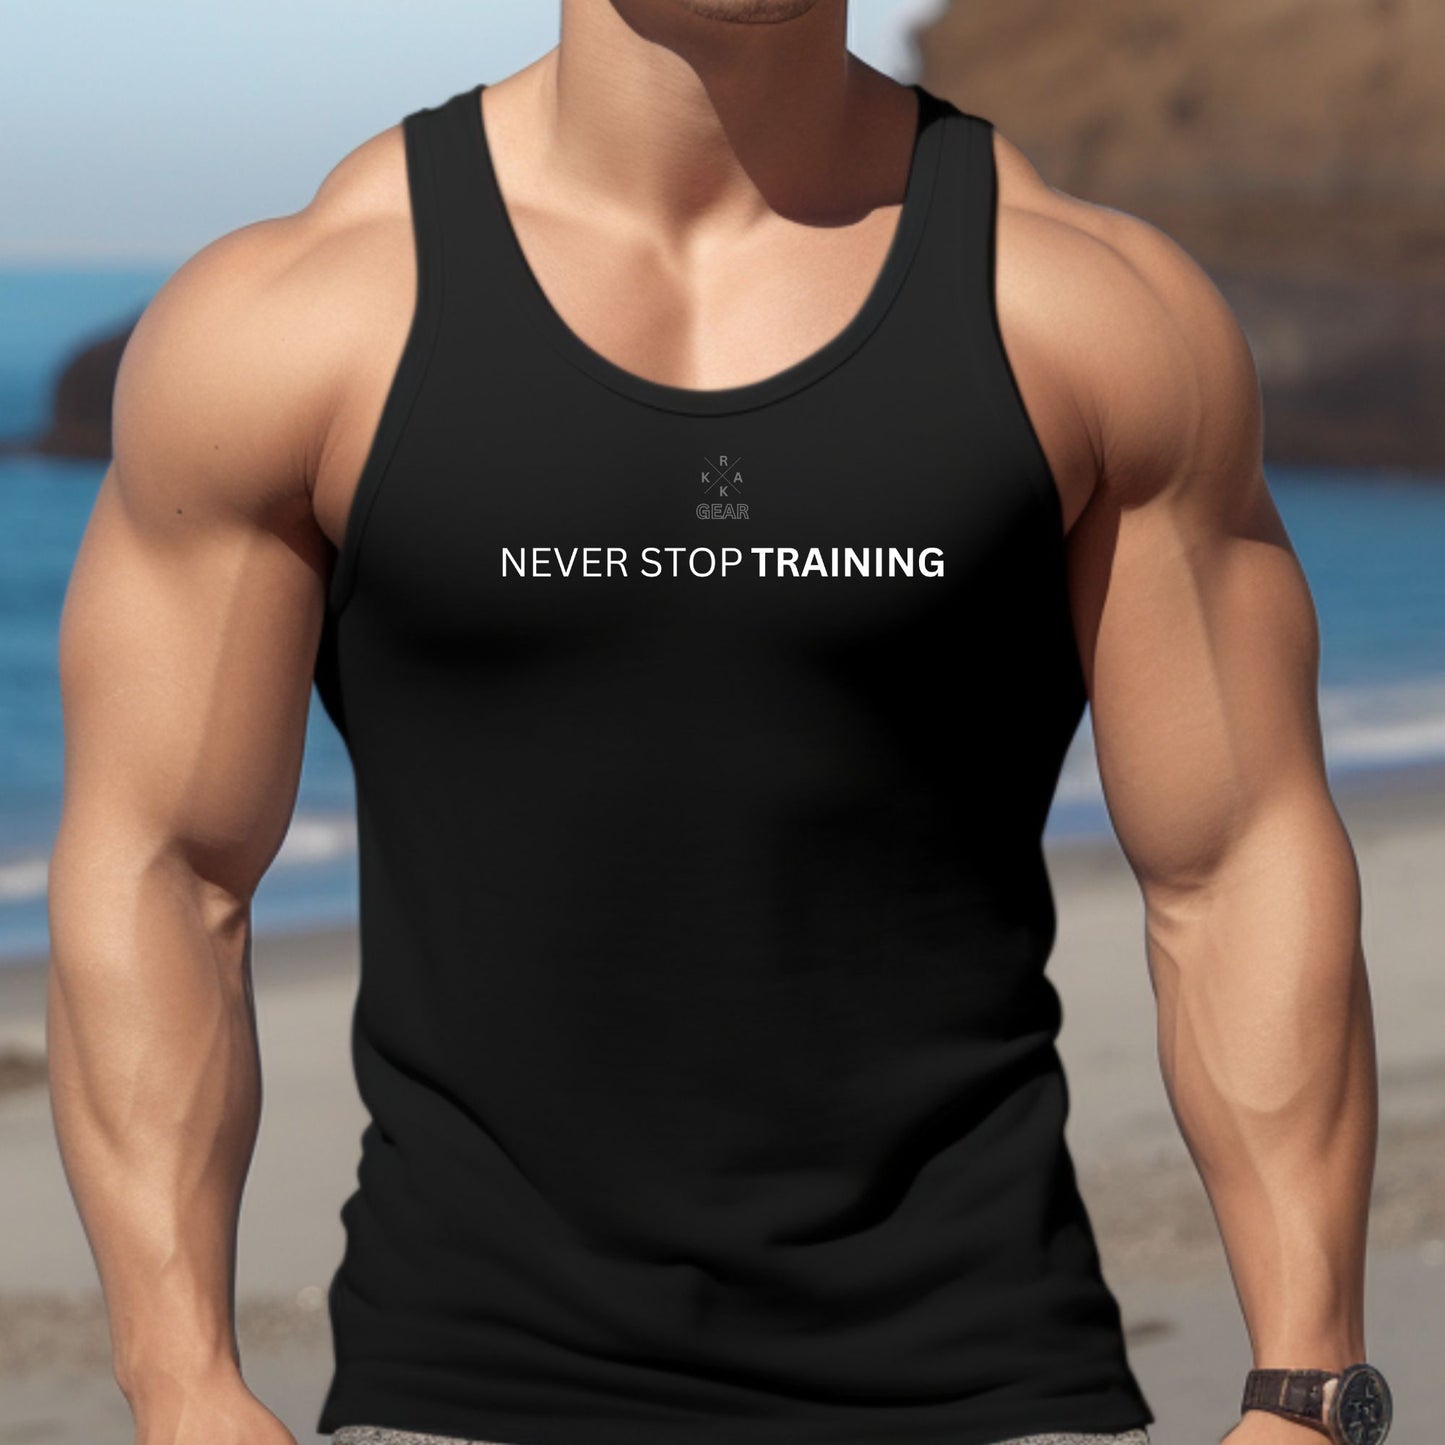 Rakkgear Never Stop Training Tank Top in black